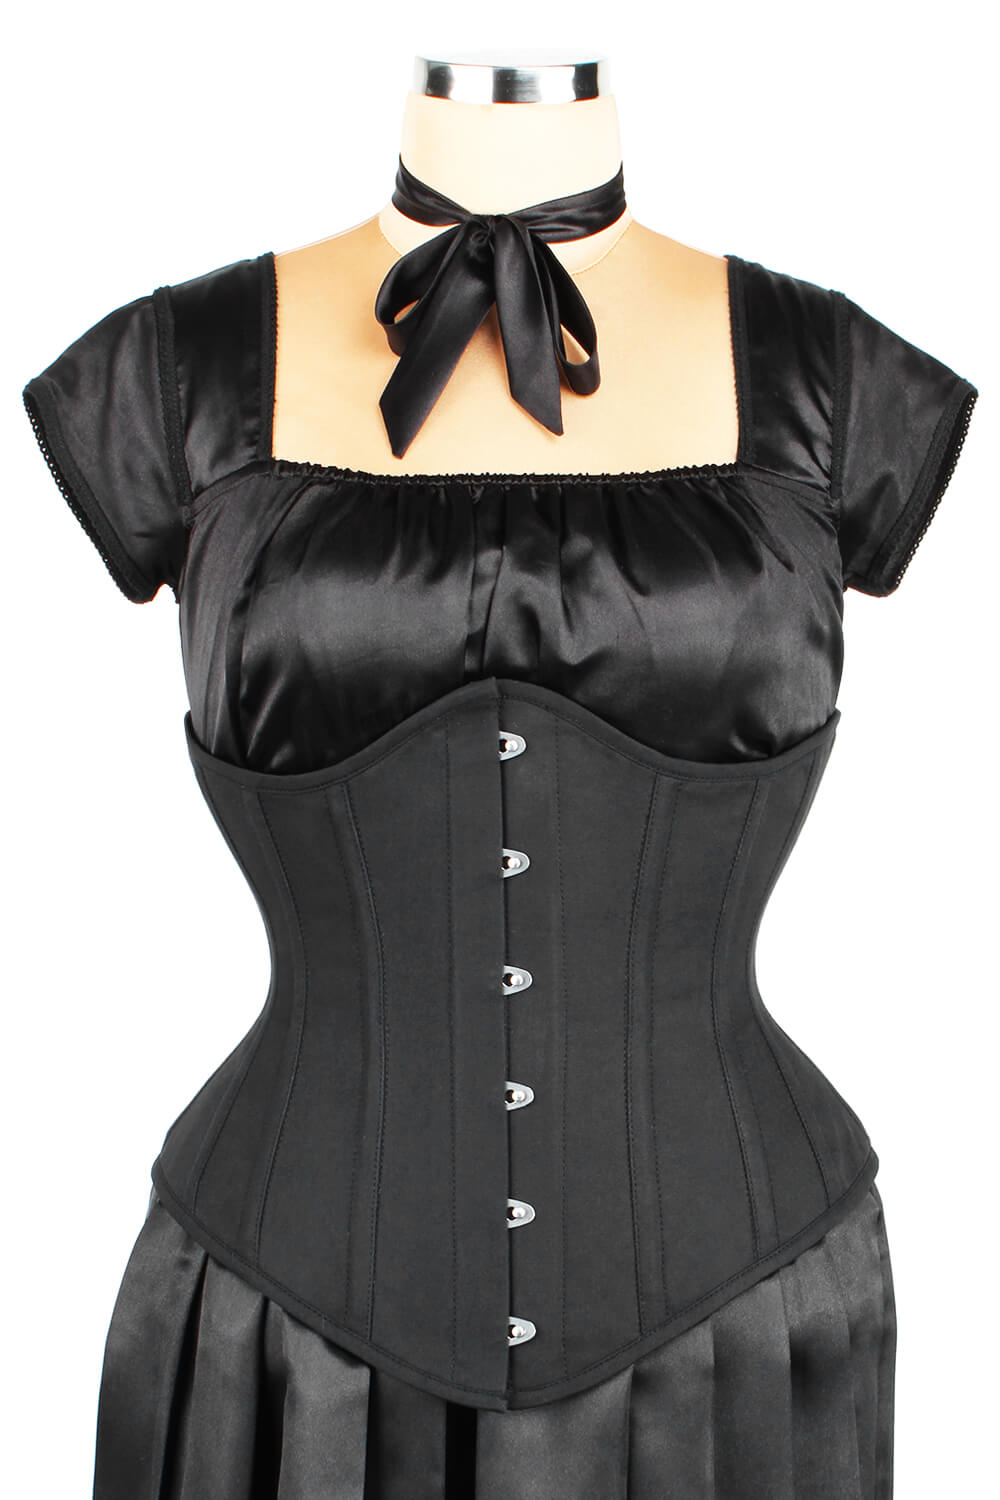 https://www.corsetdeal.com/cdn/shop/products/EL-141_F_Steel_Boned_Black_Cotton_Corset_ELC-601.jpg?v=1678176985